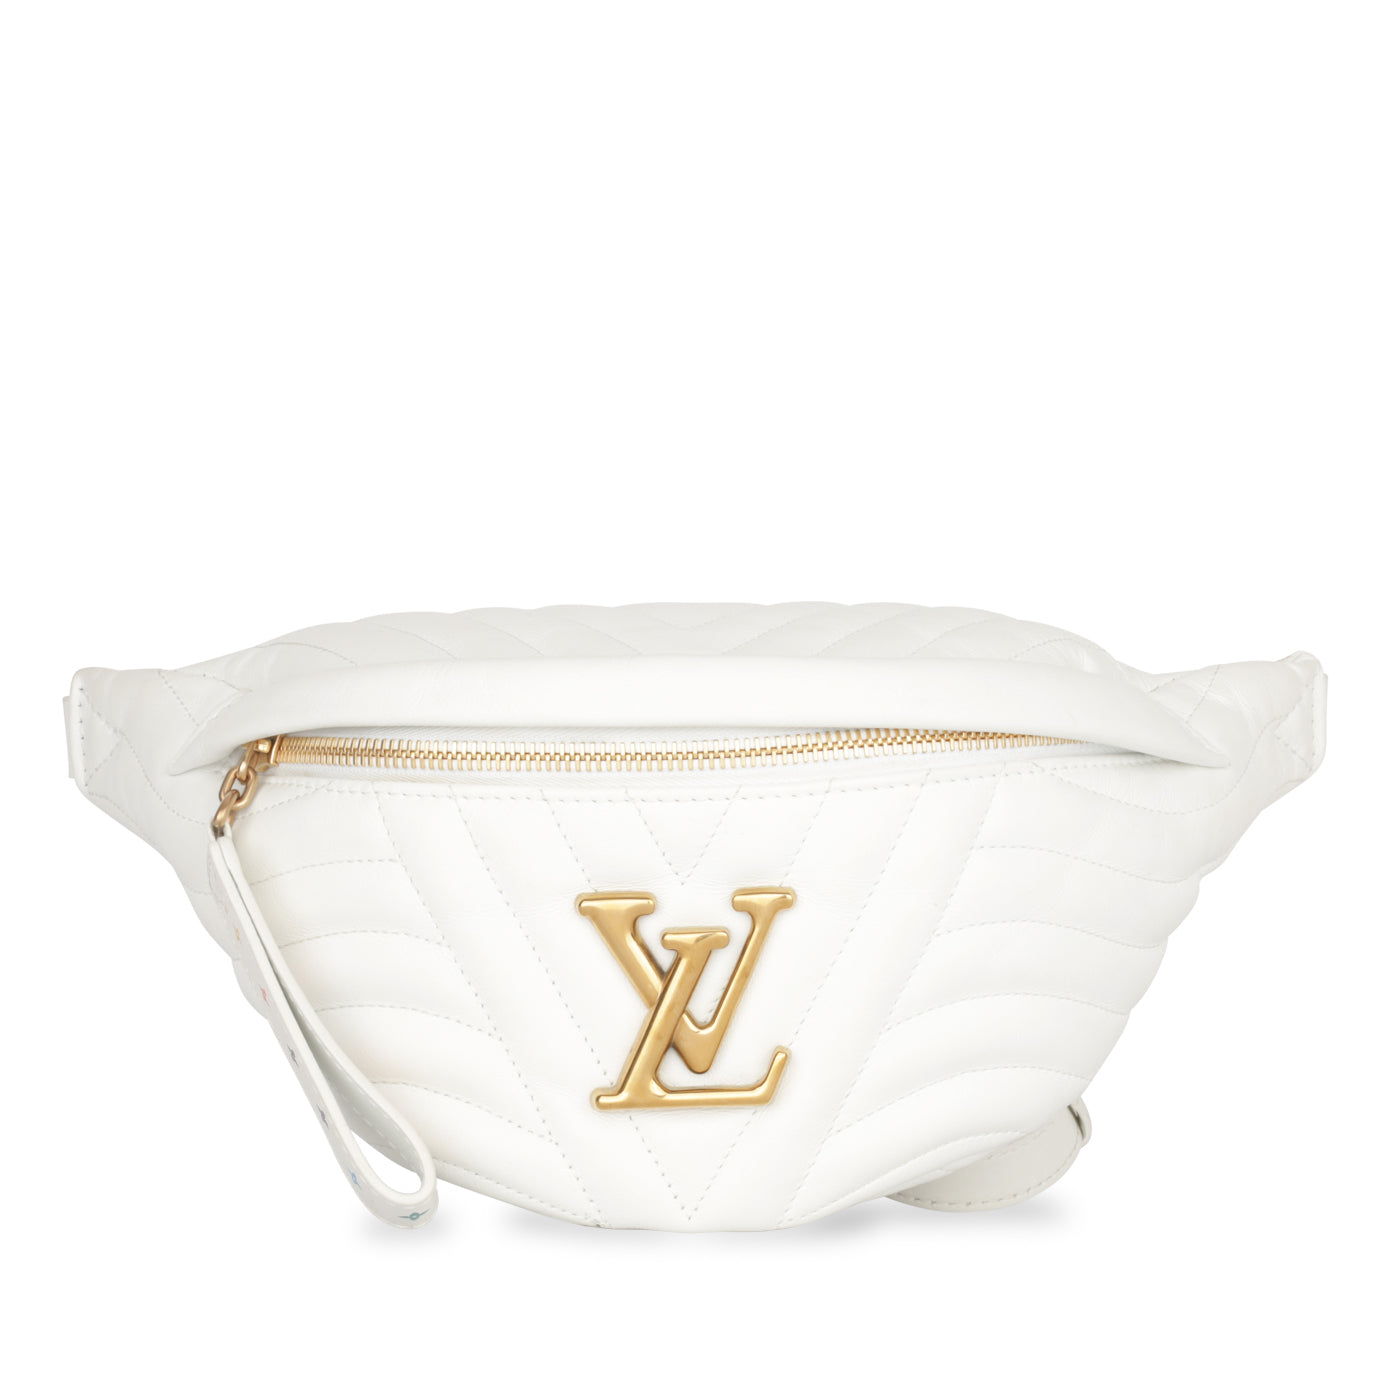 Louis Vuitton belt  Louis vuitton belt, Louis vuitton handbags, Vuitton